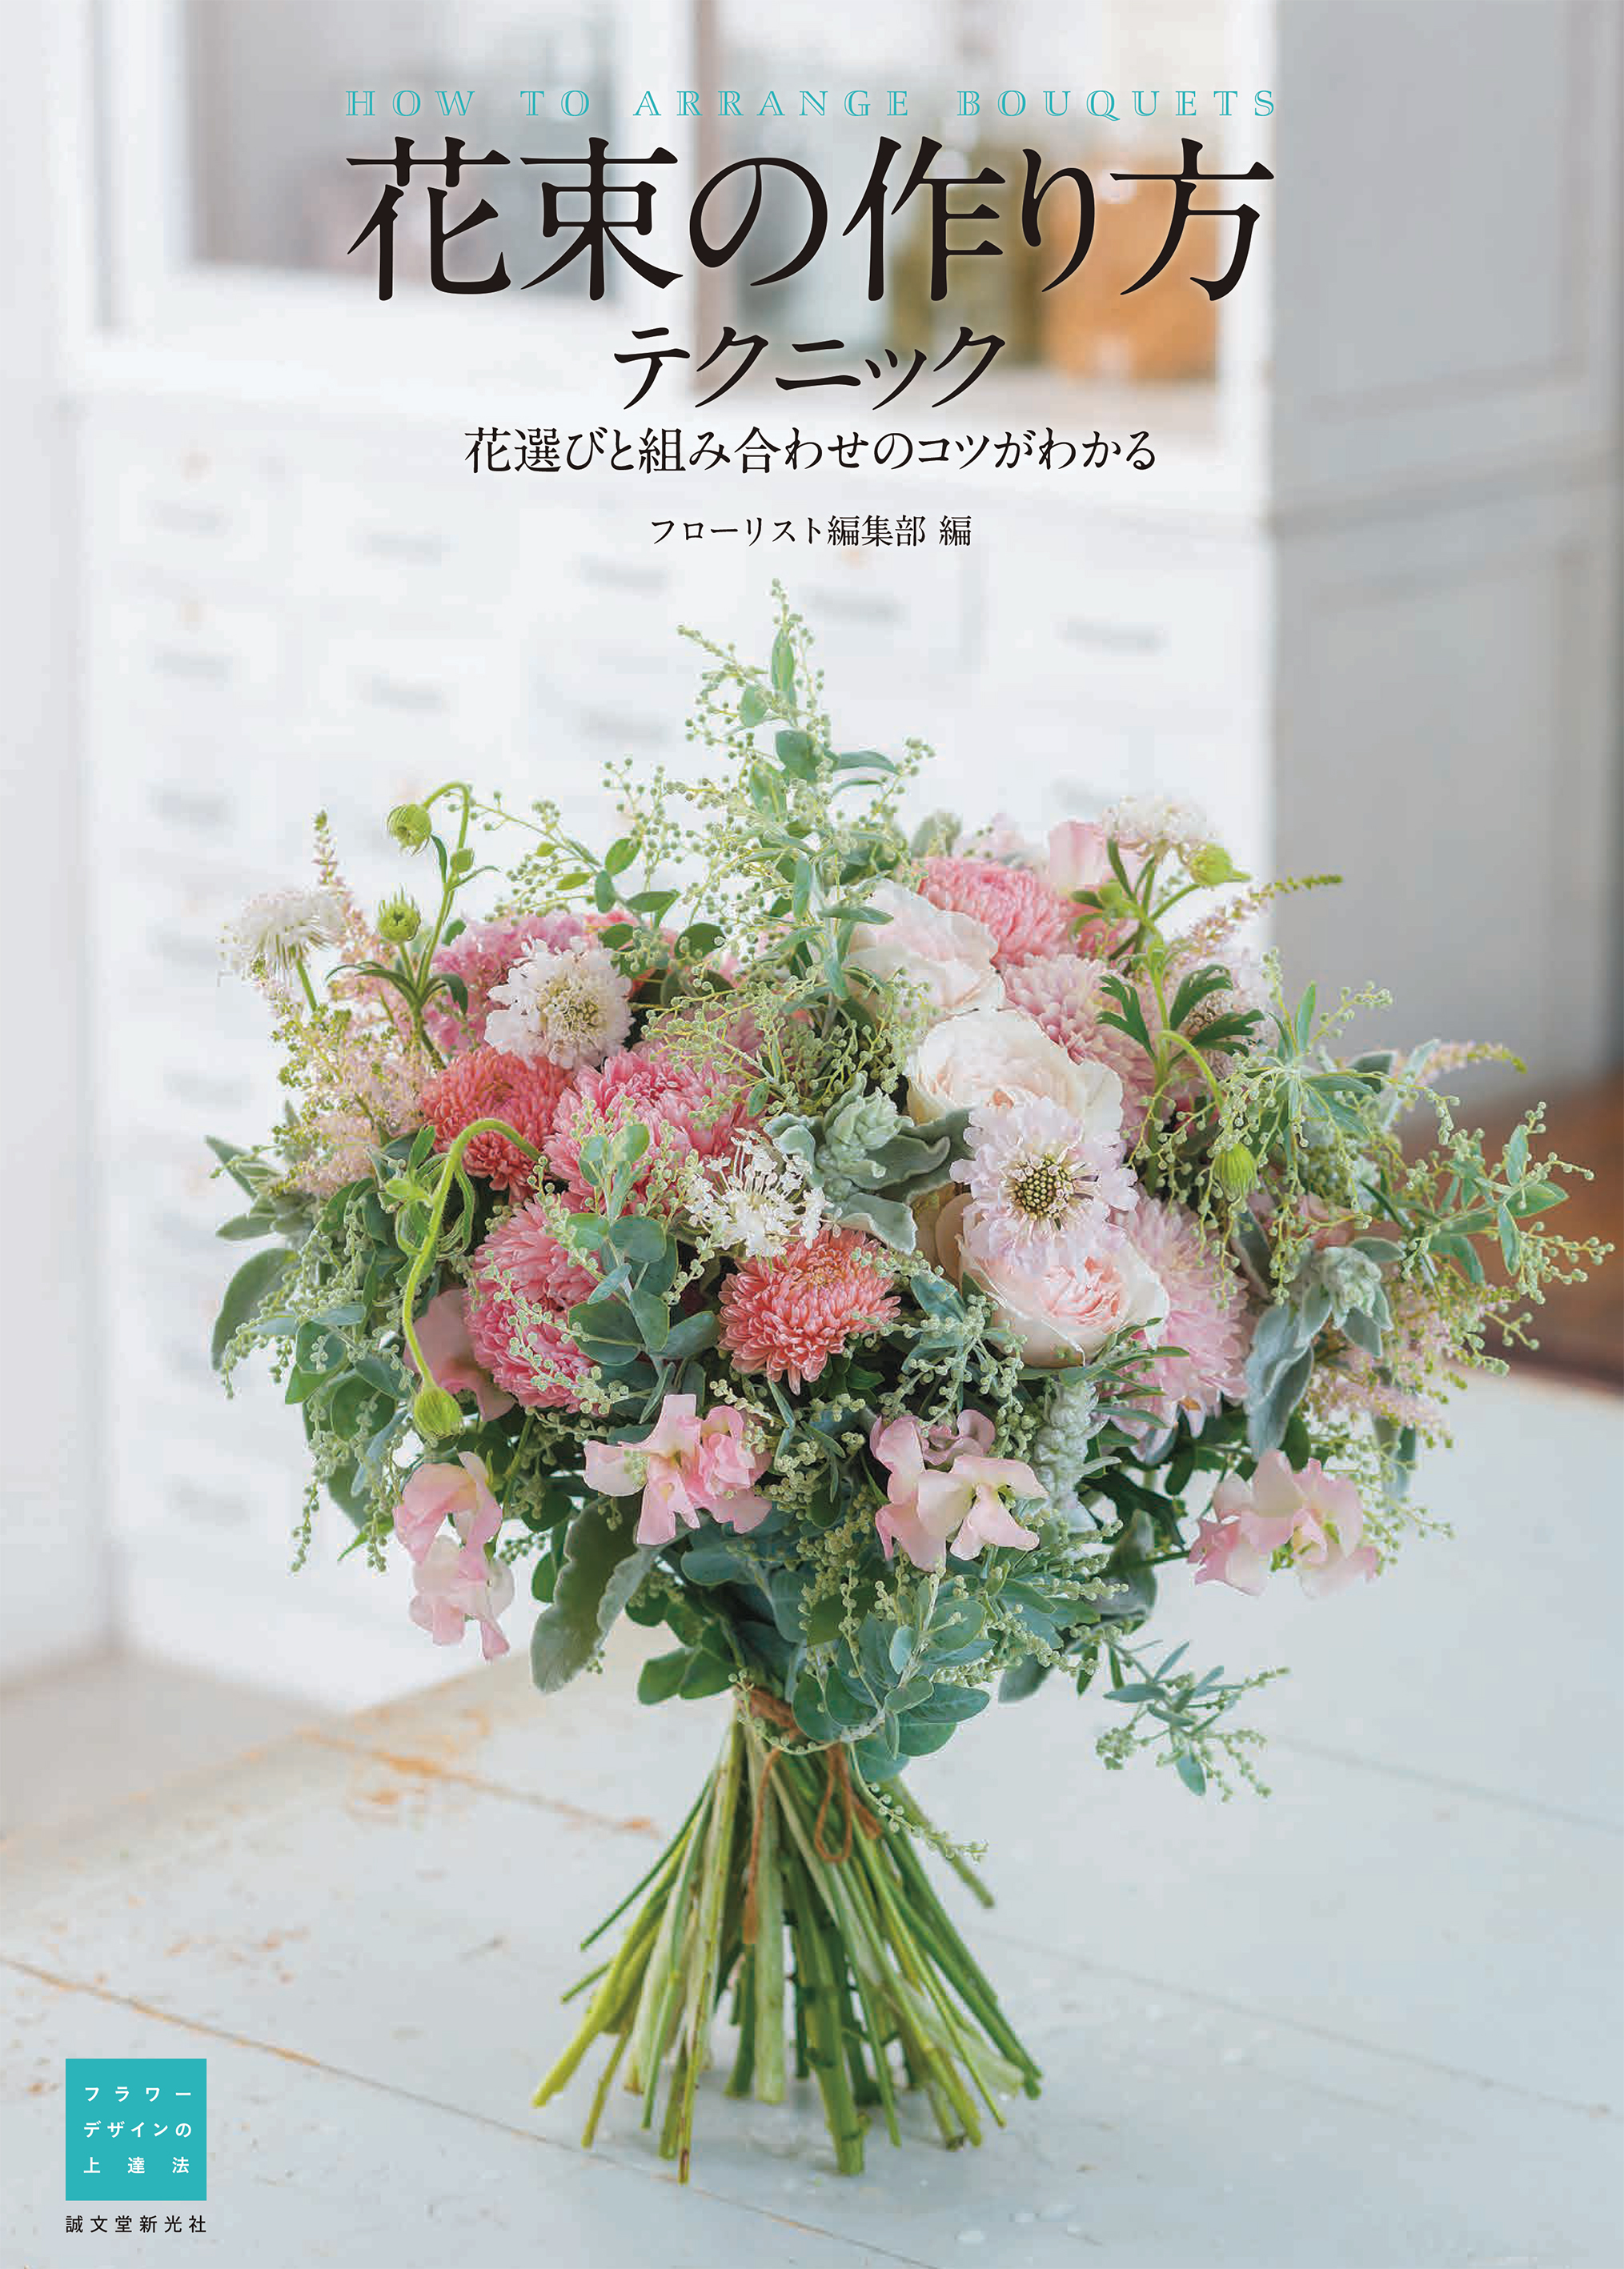 花束作りをもっと美しく 花束の作り方テクニック 刊行 株式会社誠文堂新光社のプレスリリース